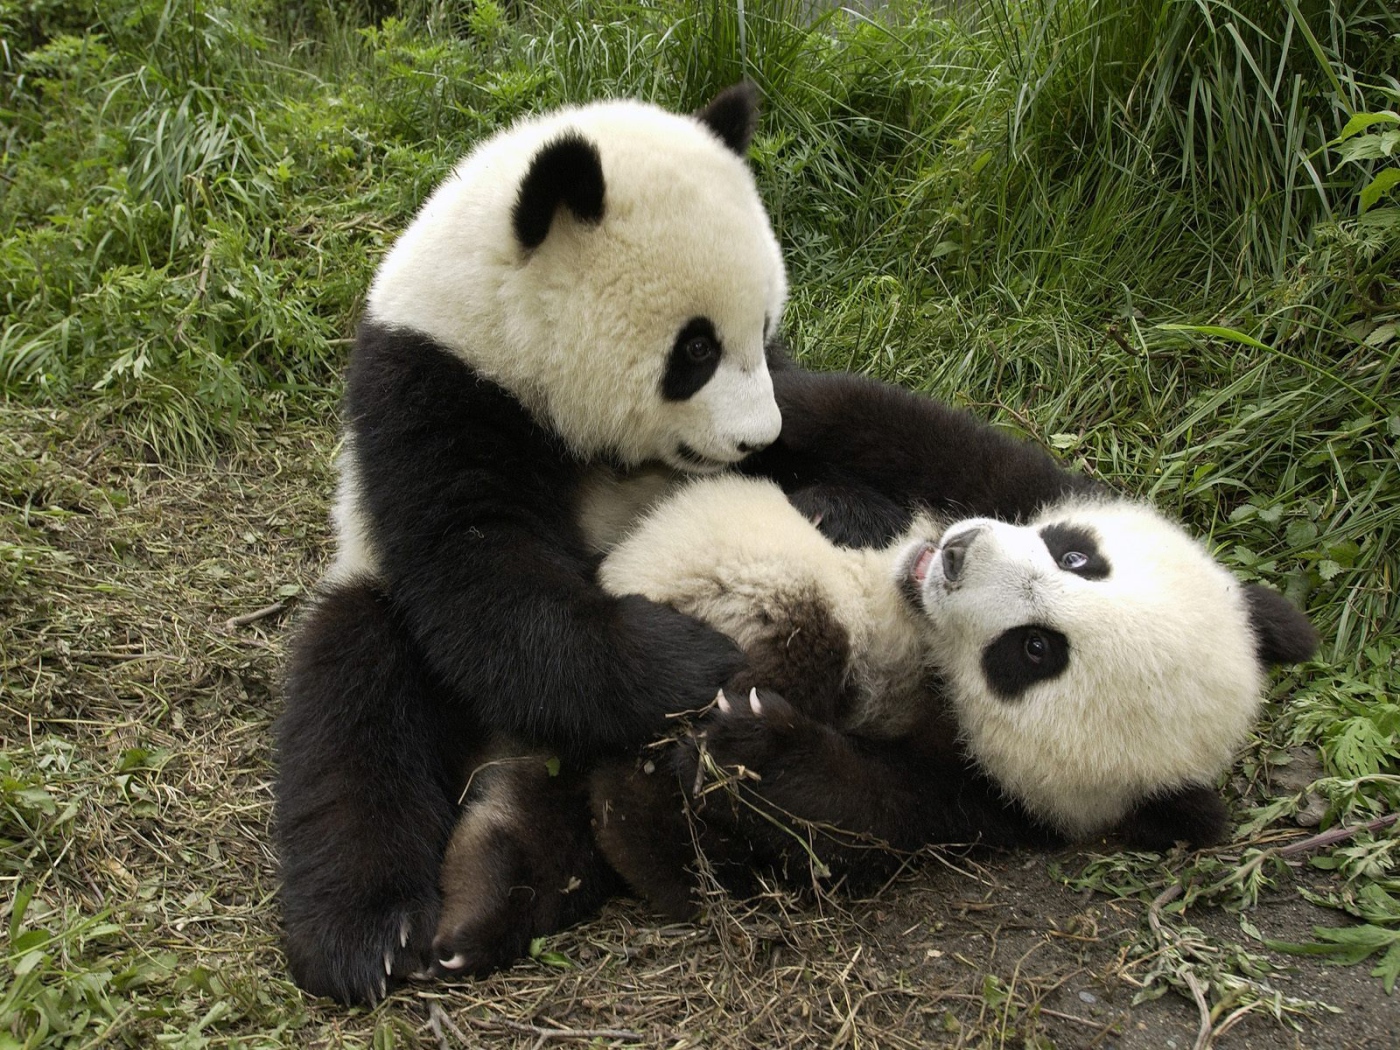 Playful pandas